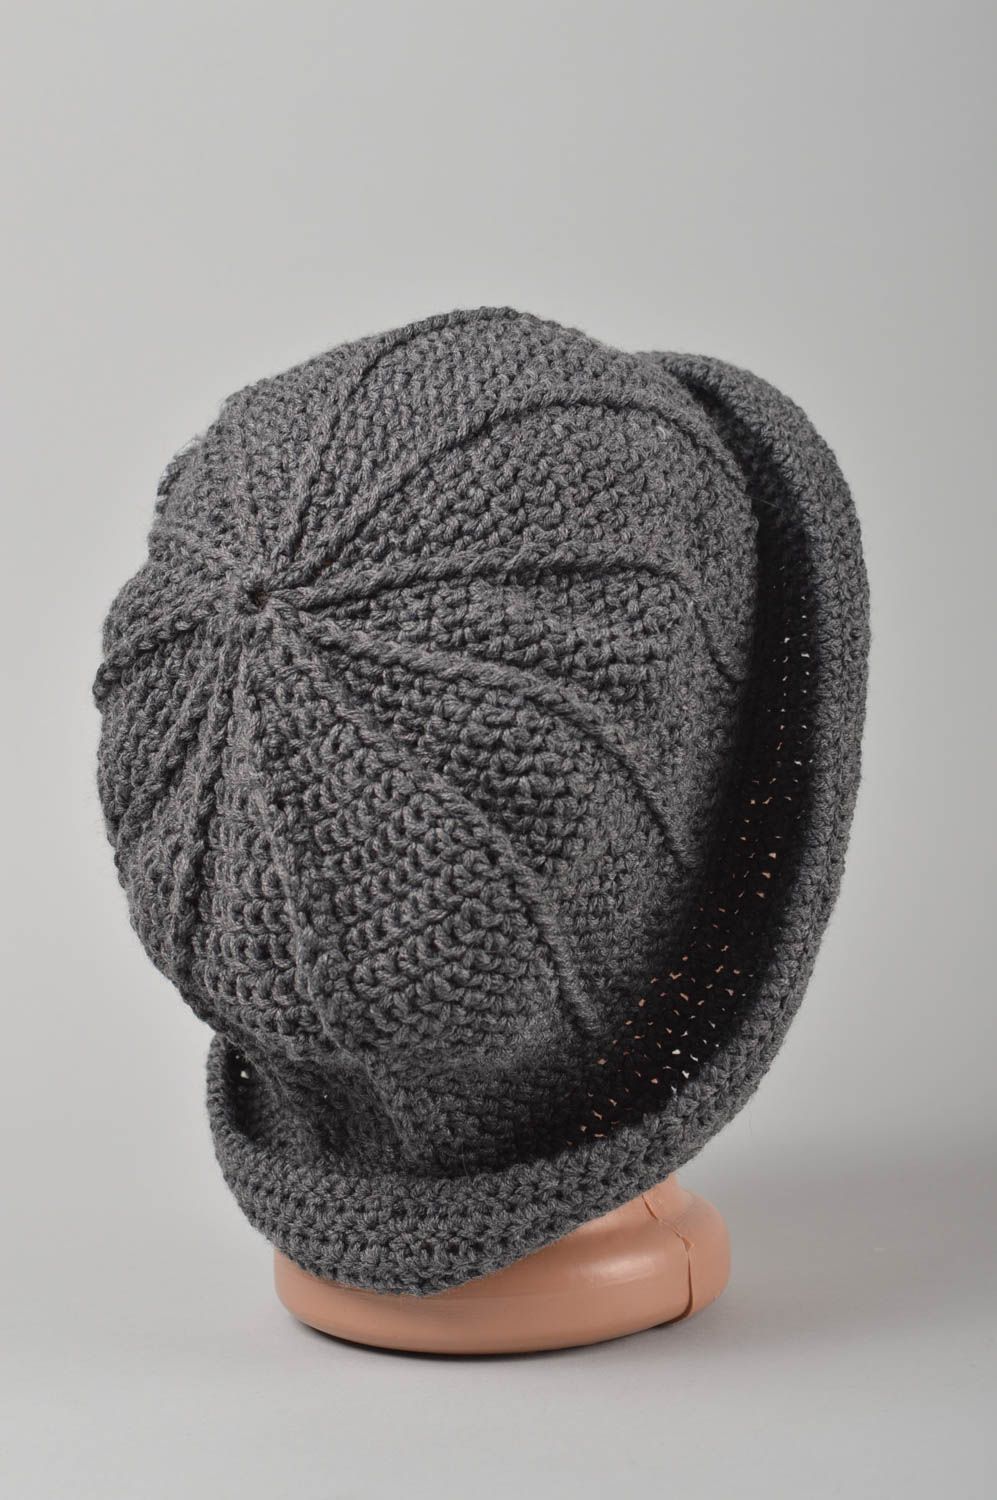 Handmade hat crocheted hat designer hat for women beaded hat gift ideas photo 4